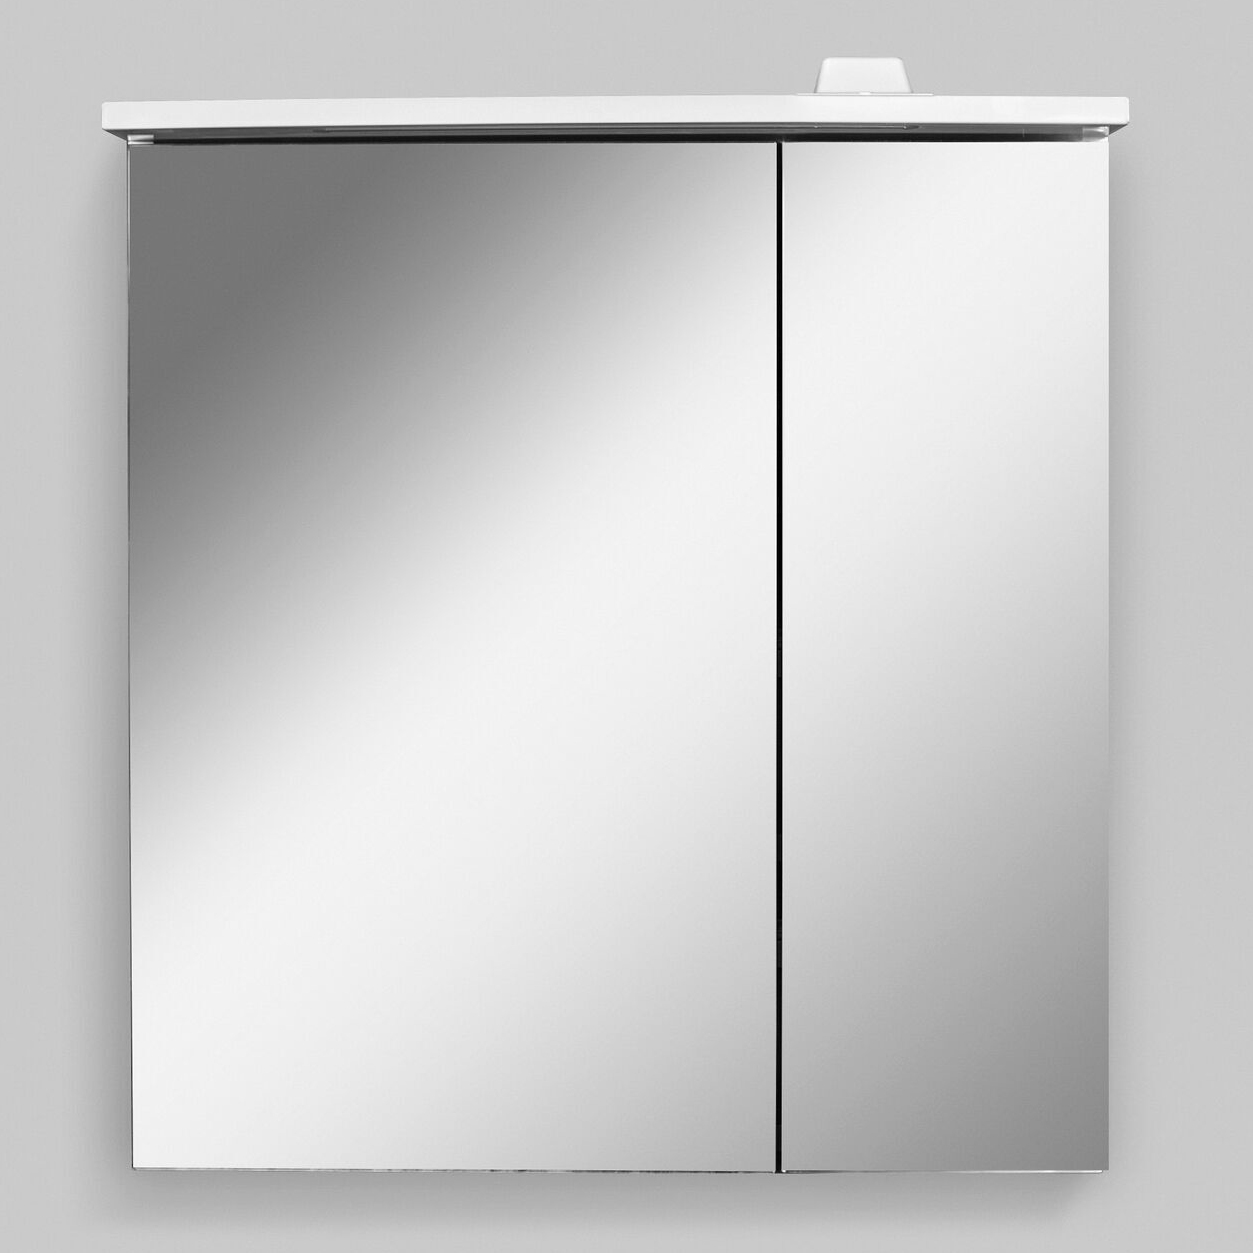 шкаф с зеркалом в ванную с подсветкой 80 см